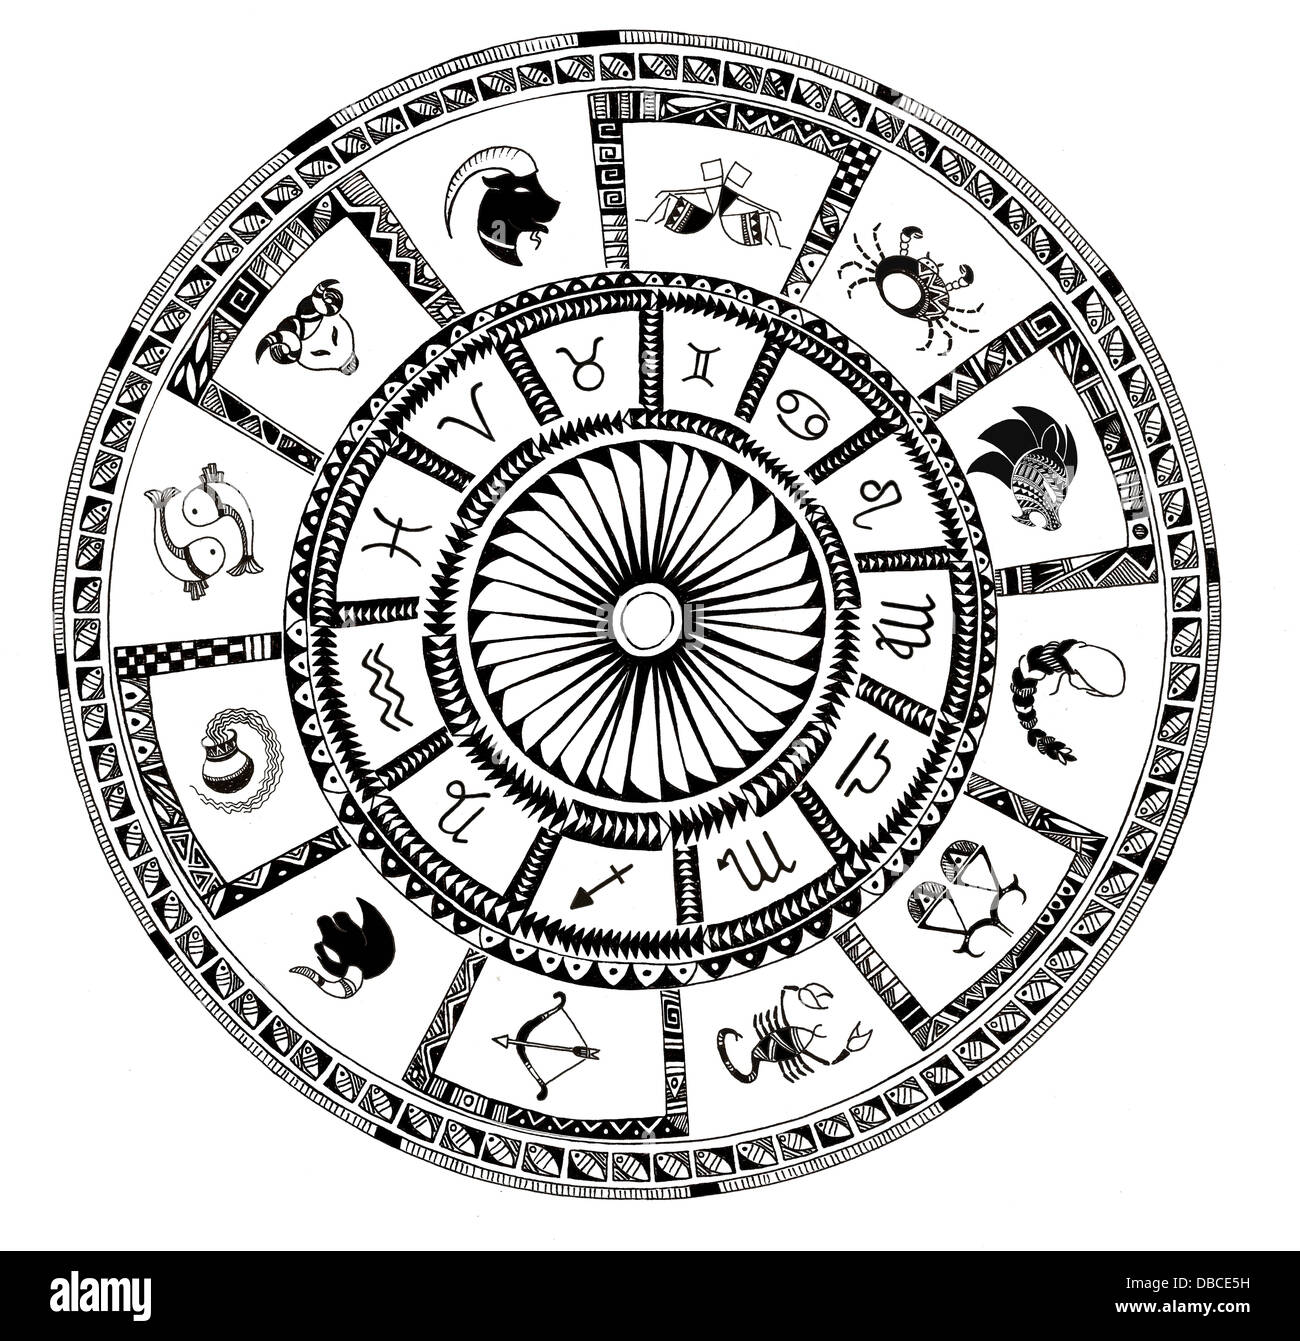 Illustrazione dei segni zodiacali su sfondo bianco Foto Stock